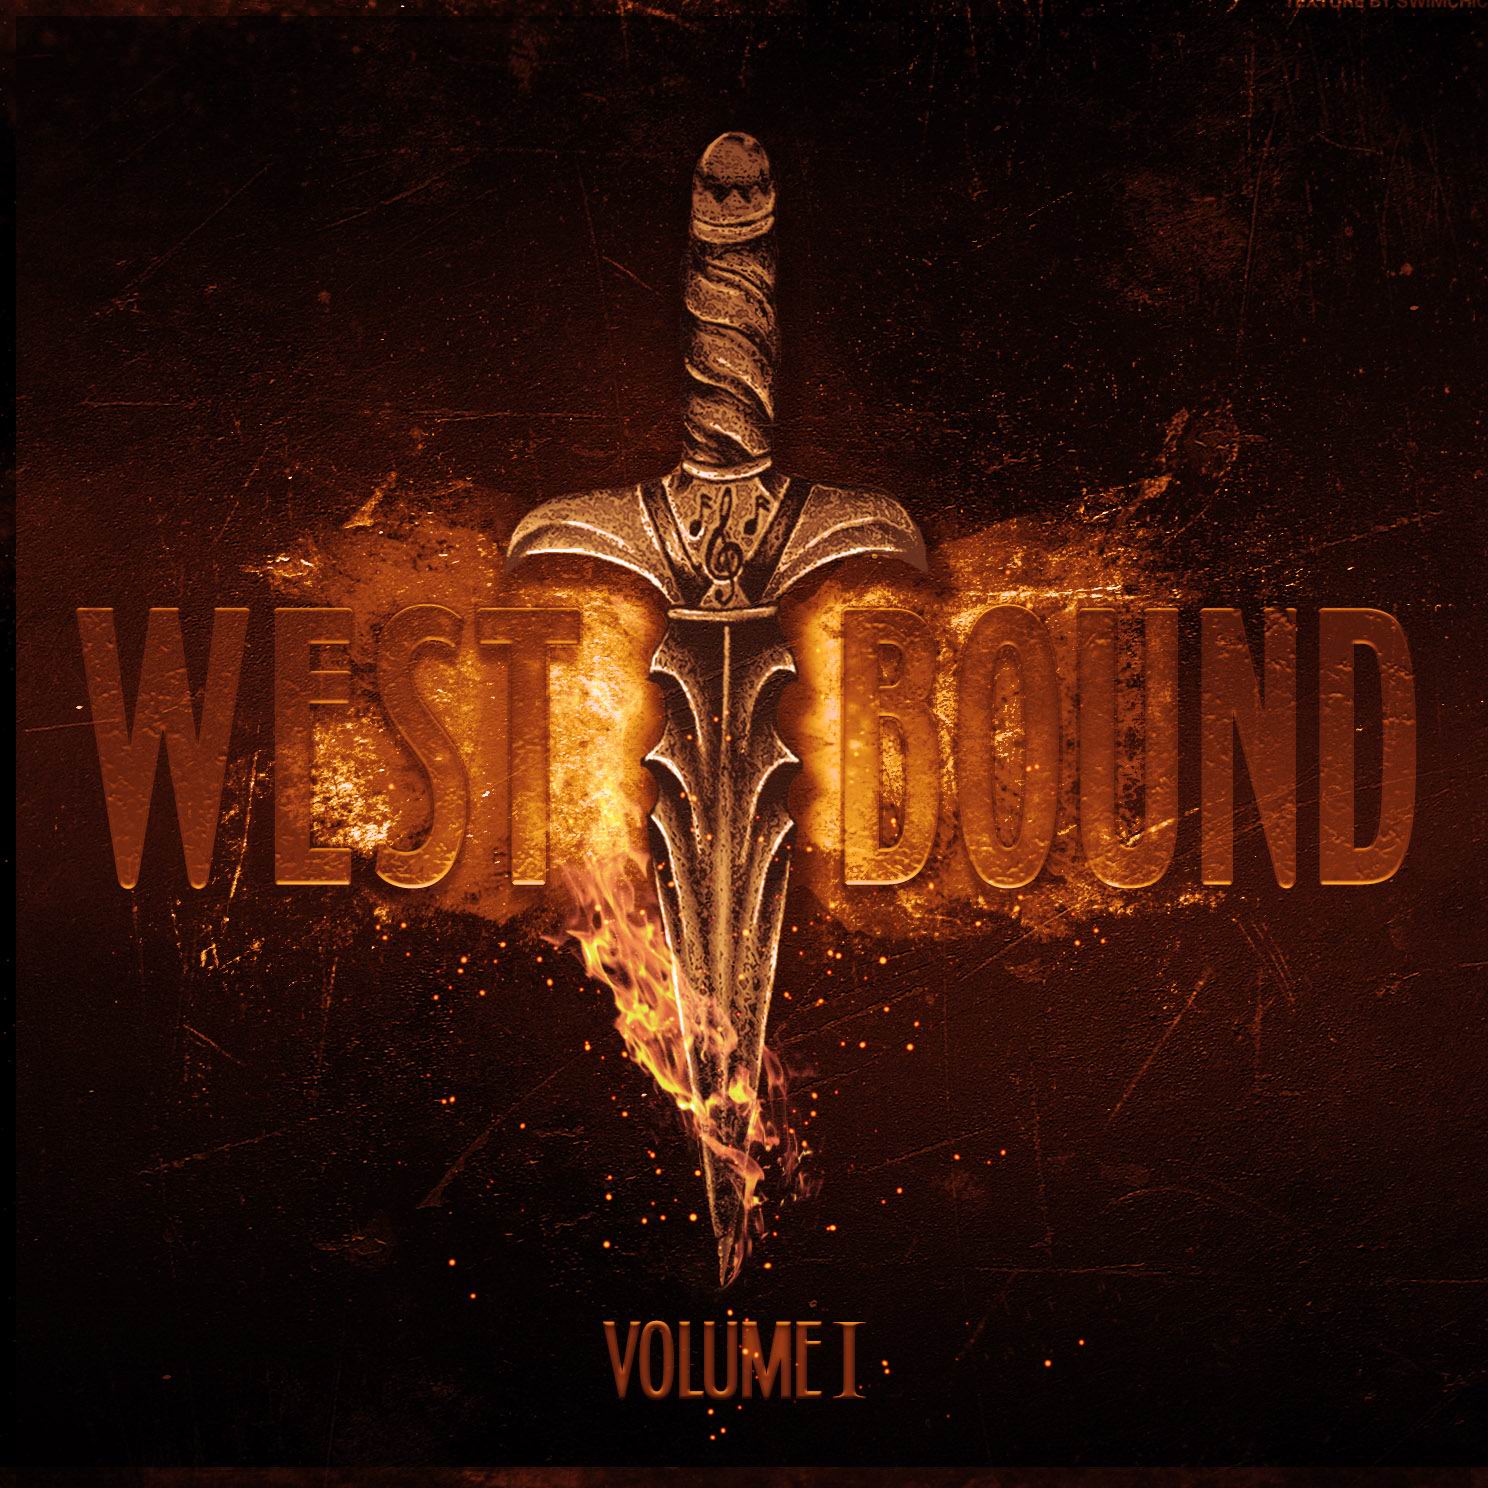 WEST BOUND - “Vol. 1”